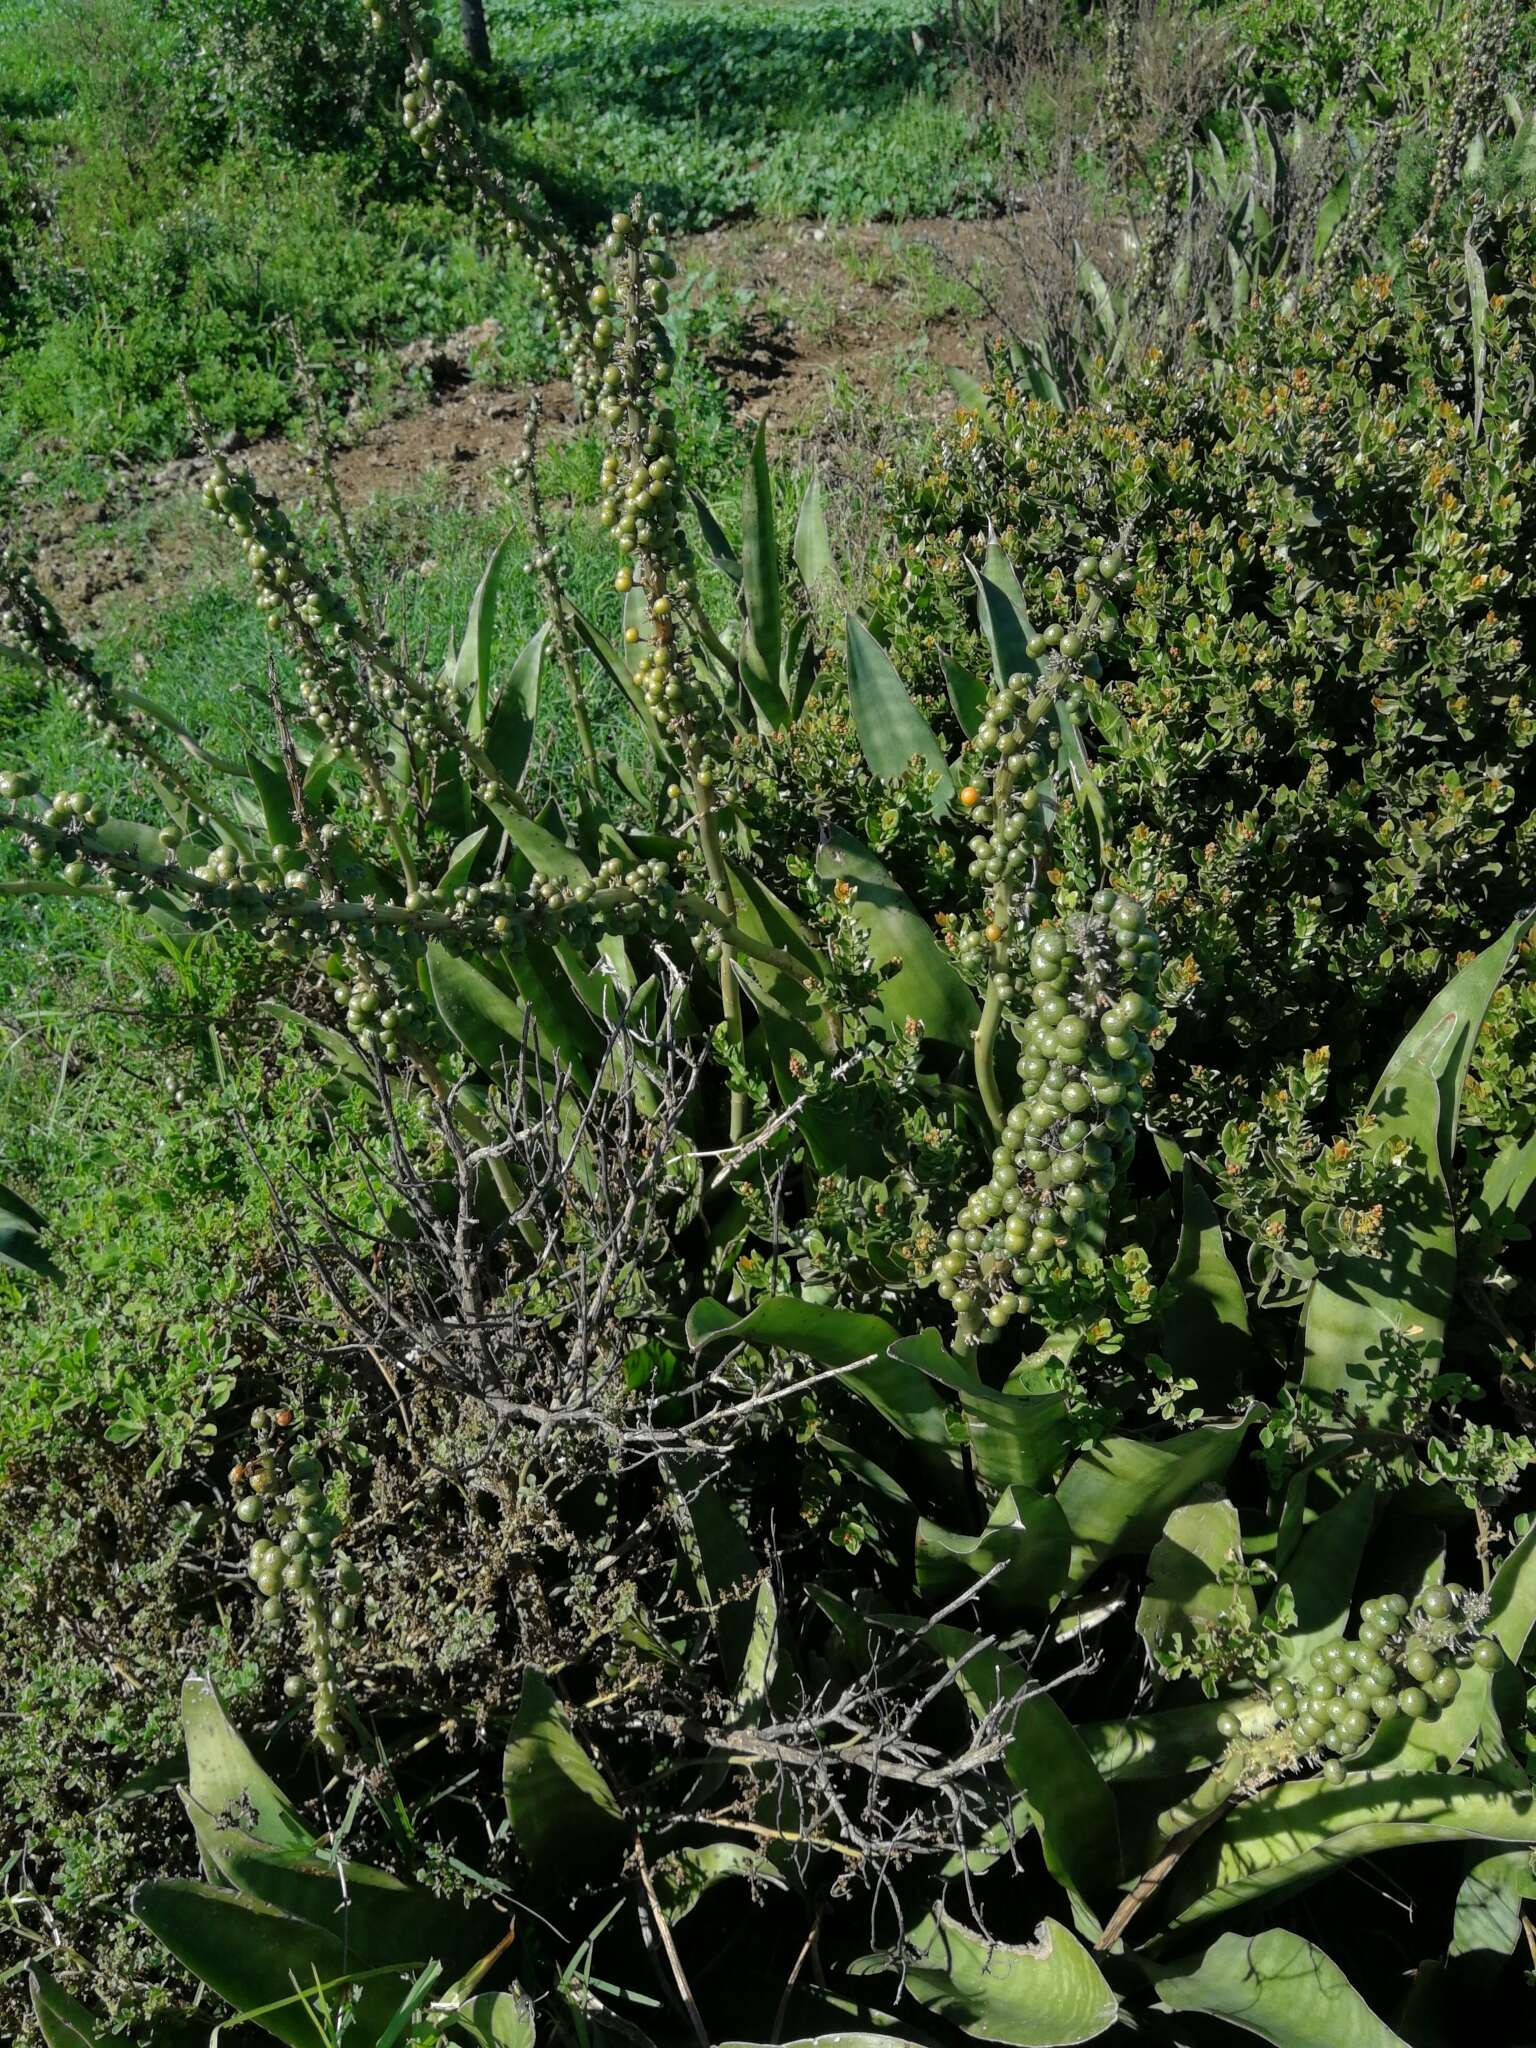 Image of iguanatail